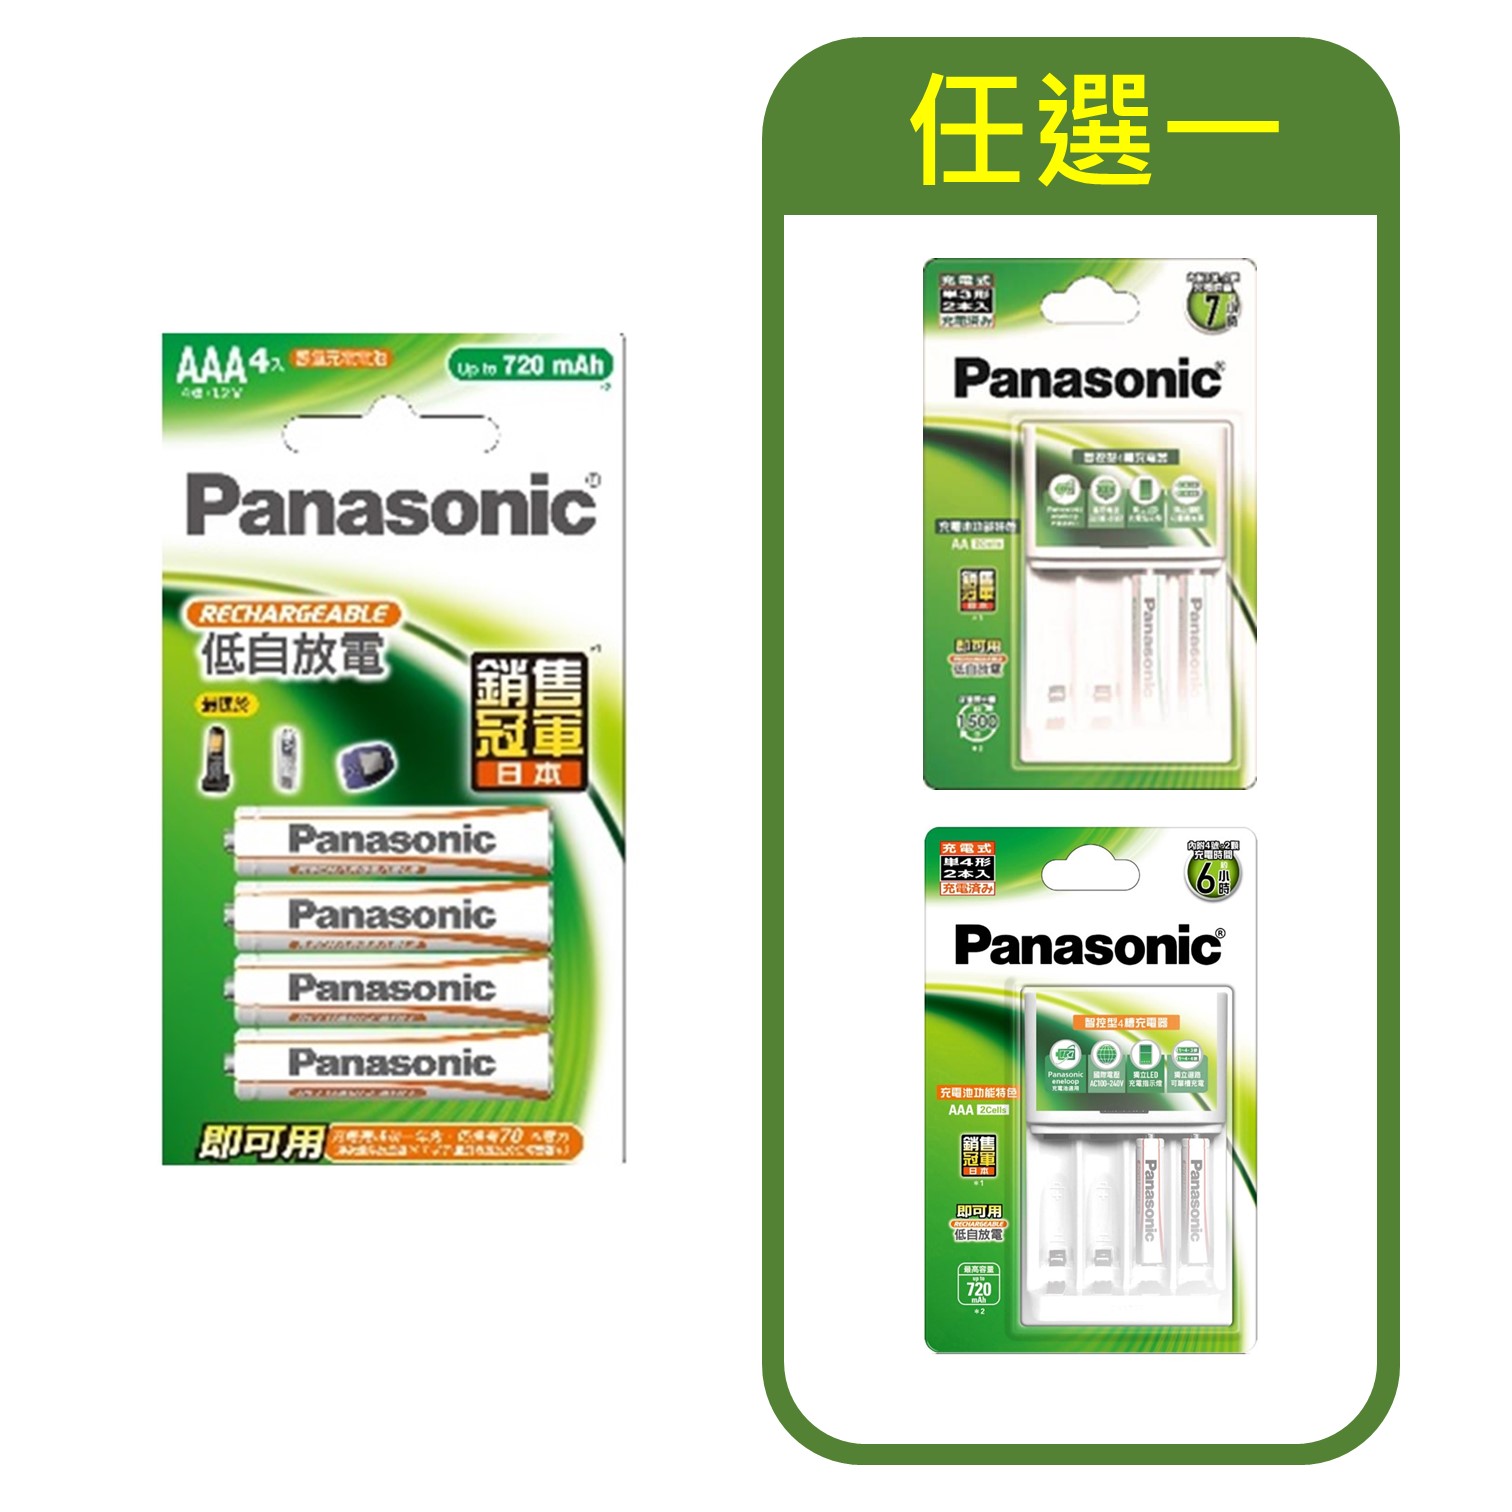 特惠組合 | 國際牌Panasonic 經濟型充電電池4號4入 + 智控型充電器+充電電池3號/4號2入(任選一)